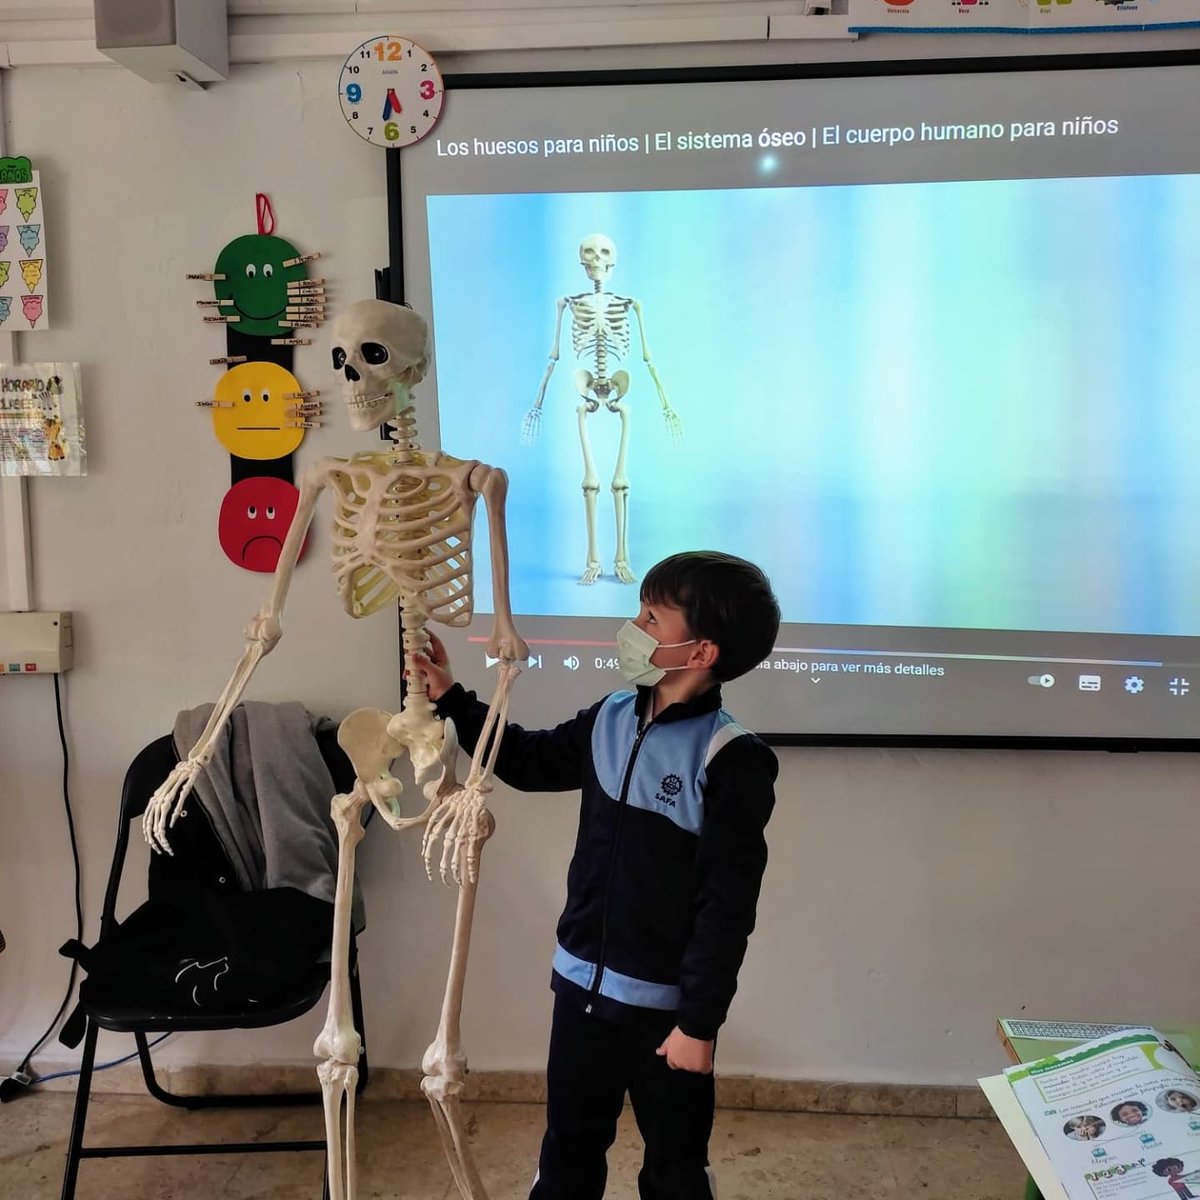 Los alumnos de 1ºP,en CNA han contado con la inestimable colaboración de 'Simba'.
Gracias a él,aprendemos a localizar los huesos del cuerpo humano a tamaño real¡esto sí que es realidad aumentada!

#SAFA_Villacarrillo #Atrévete #aprendizajesignificativo #science #huesossaludables